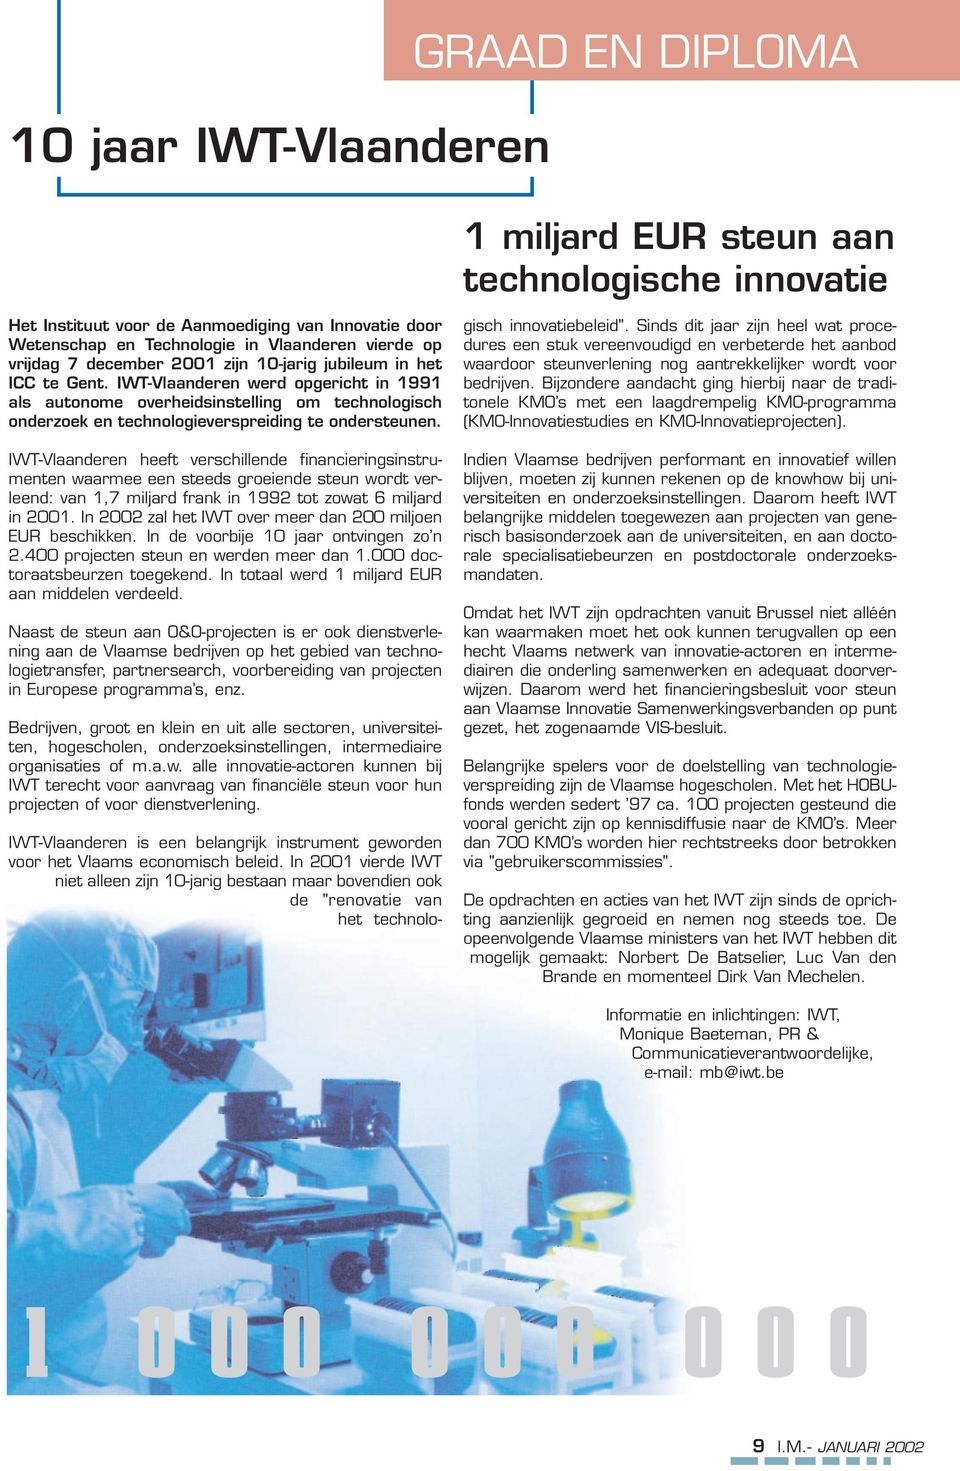 IWT-Vlaanderen werd opgericht in 1991 als autonome overheidsinstelling om technologisch onderzoek en technologieverspreiding te ondersteunen.